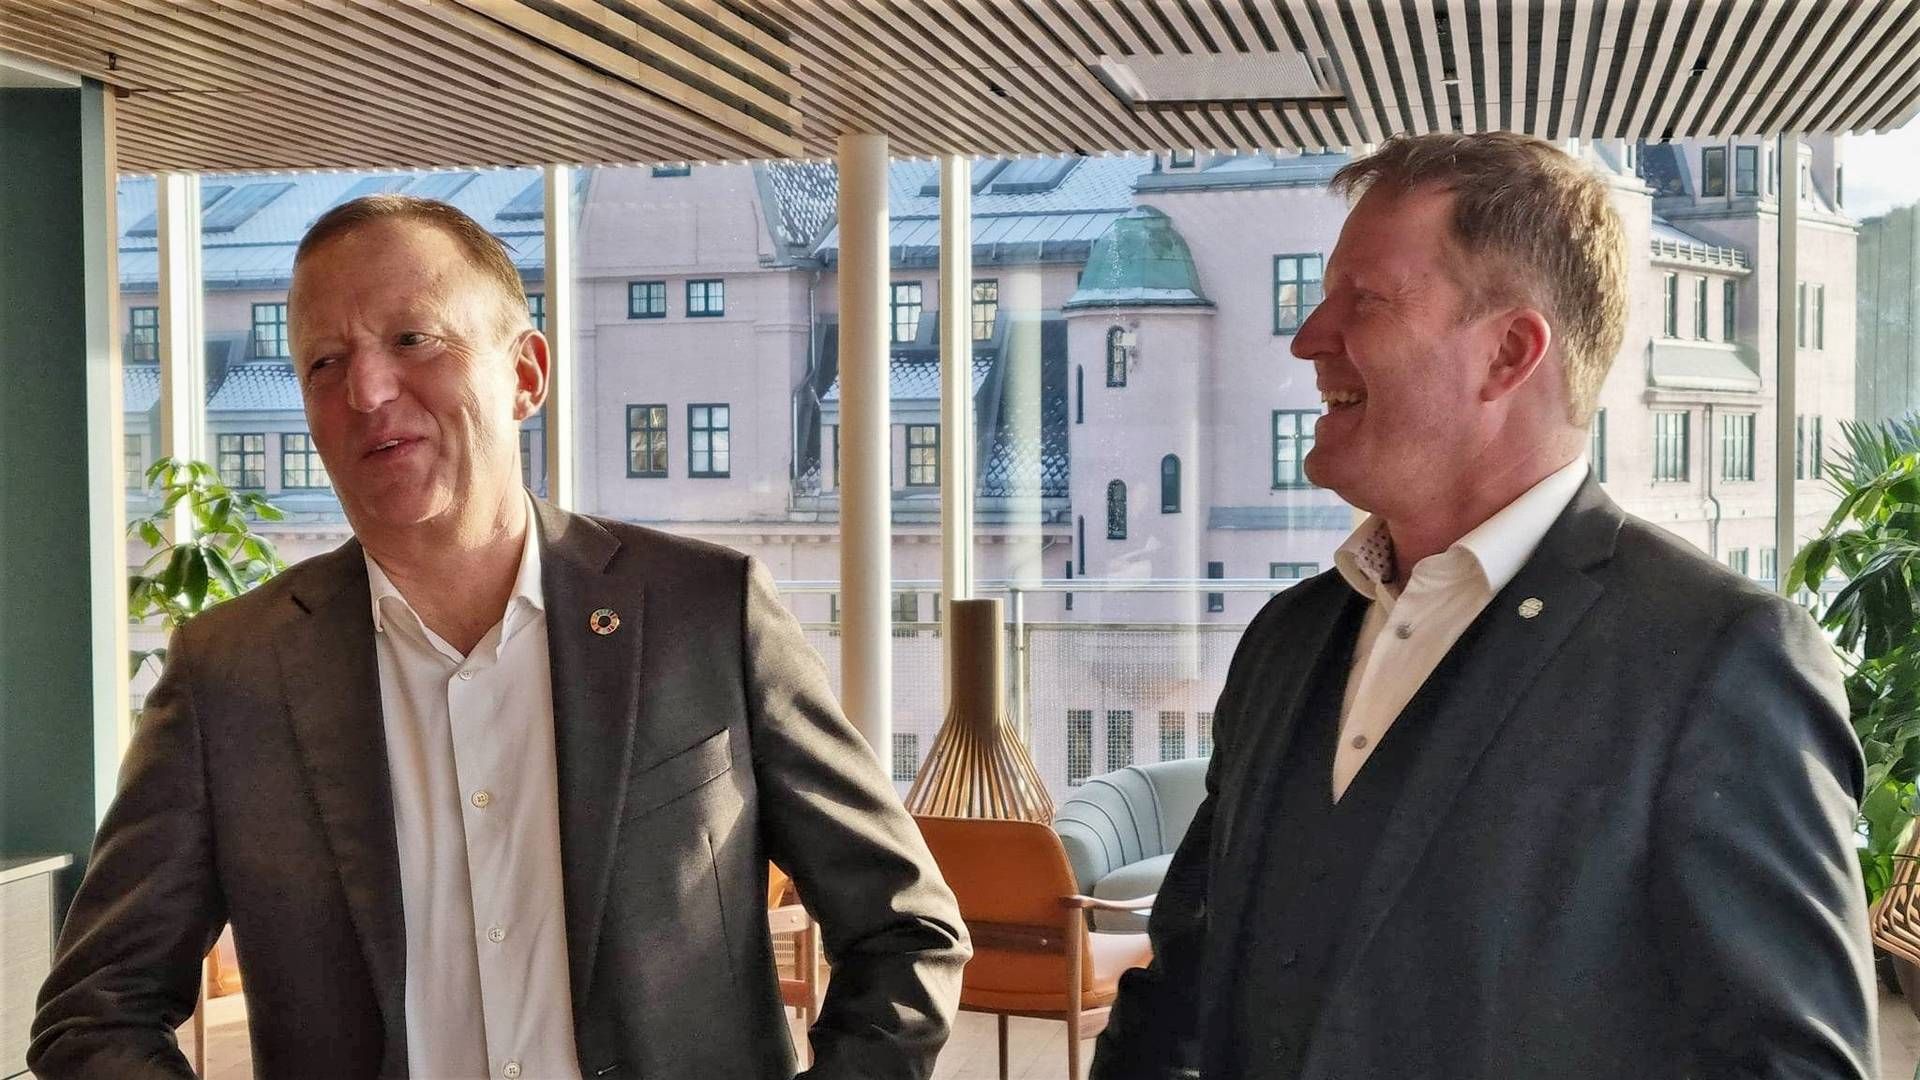 TOPPSTEMNING: Harald Vaagaasar Nikolaisen er administrerende direktør i Statsbygg. Her er han på plass i lokalene til Innovasjon Norge sammen med kommunalminister Sigbjørn Gjelsvik, som begge er fornøyde med besparelsene i de mange leieforholdene statlige aktører har oppnådd de siste årene. | Foto: Øystein Byberg